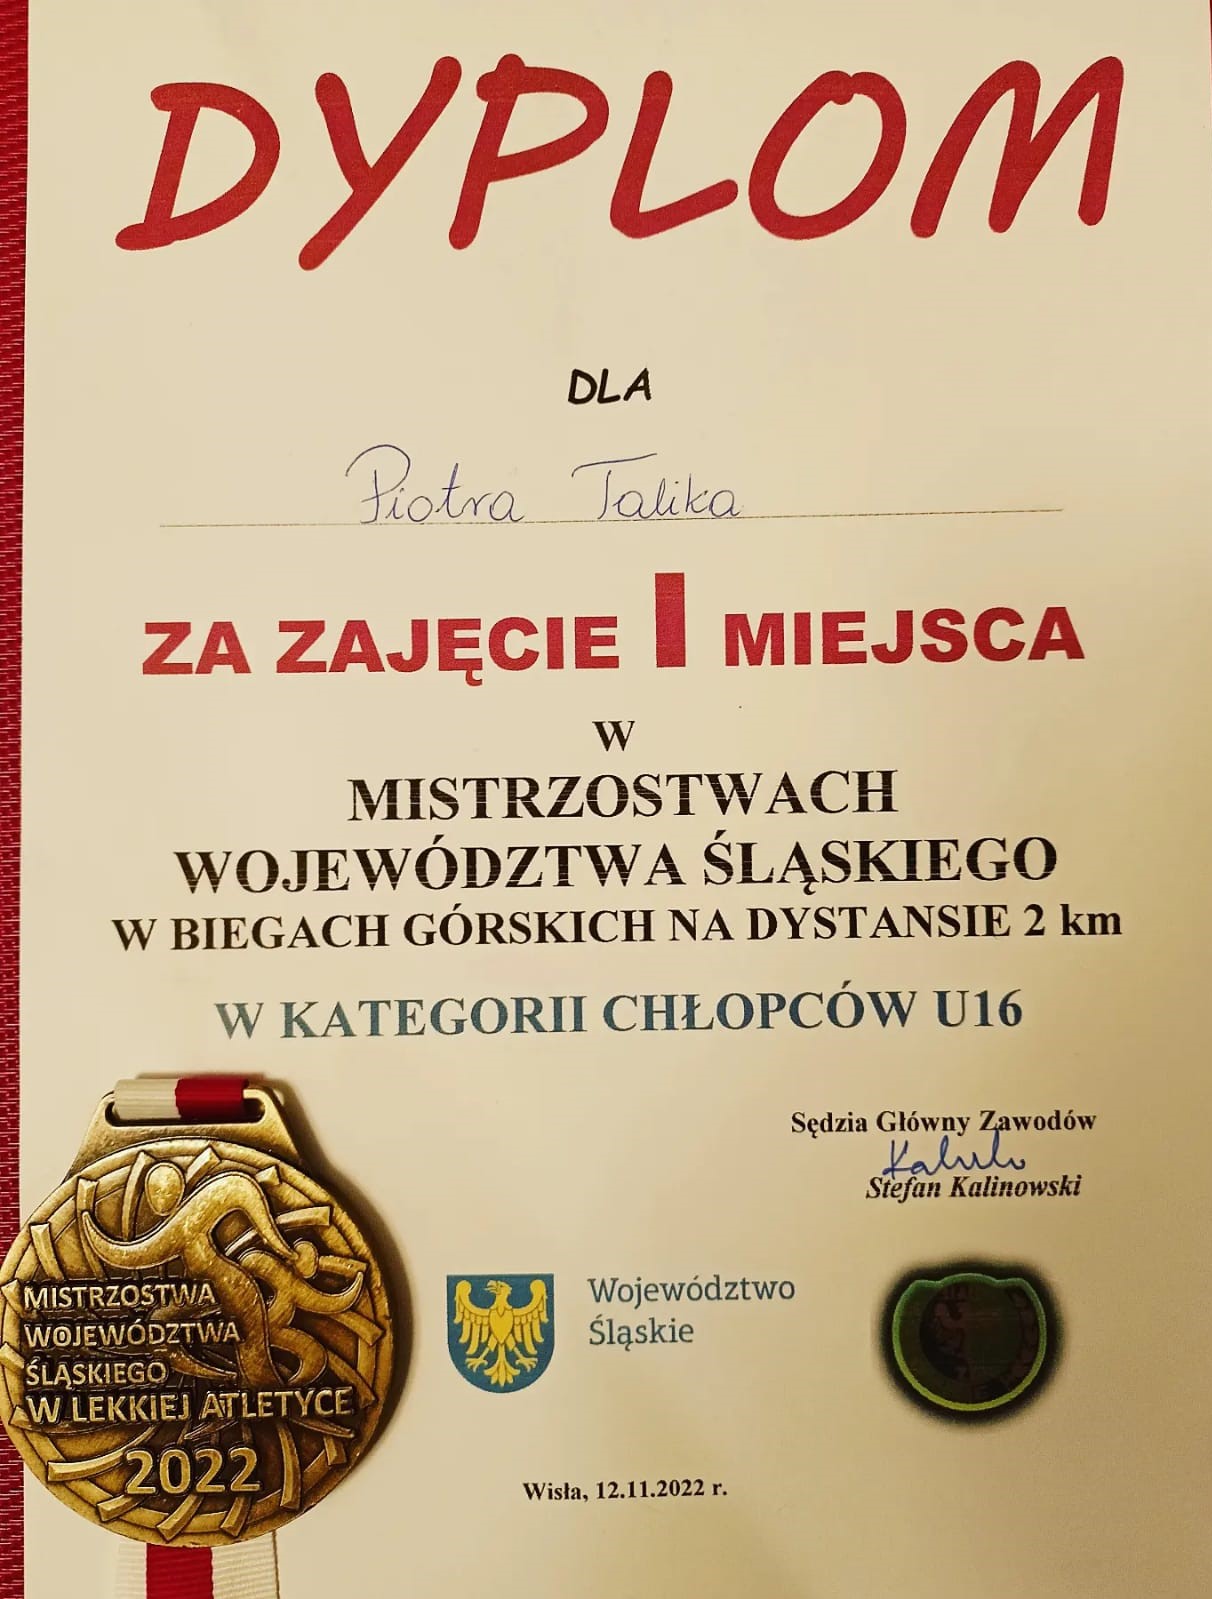 Dyplom dla Piotra Talika za zdobycie pierwszego miejsca wraz ze złotym medalem z wygrawerowaną nazwą zawodów Mistrzostw Województwa Śląskiego w Lekkiej Atletyce.